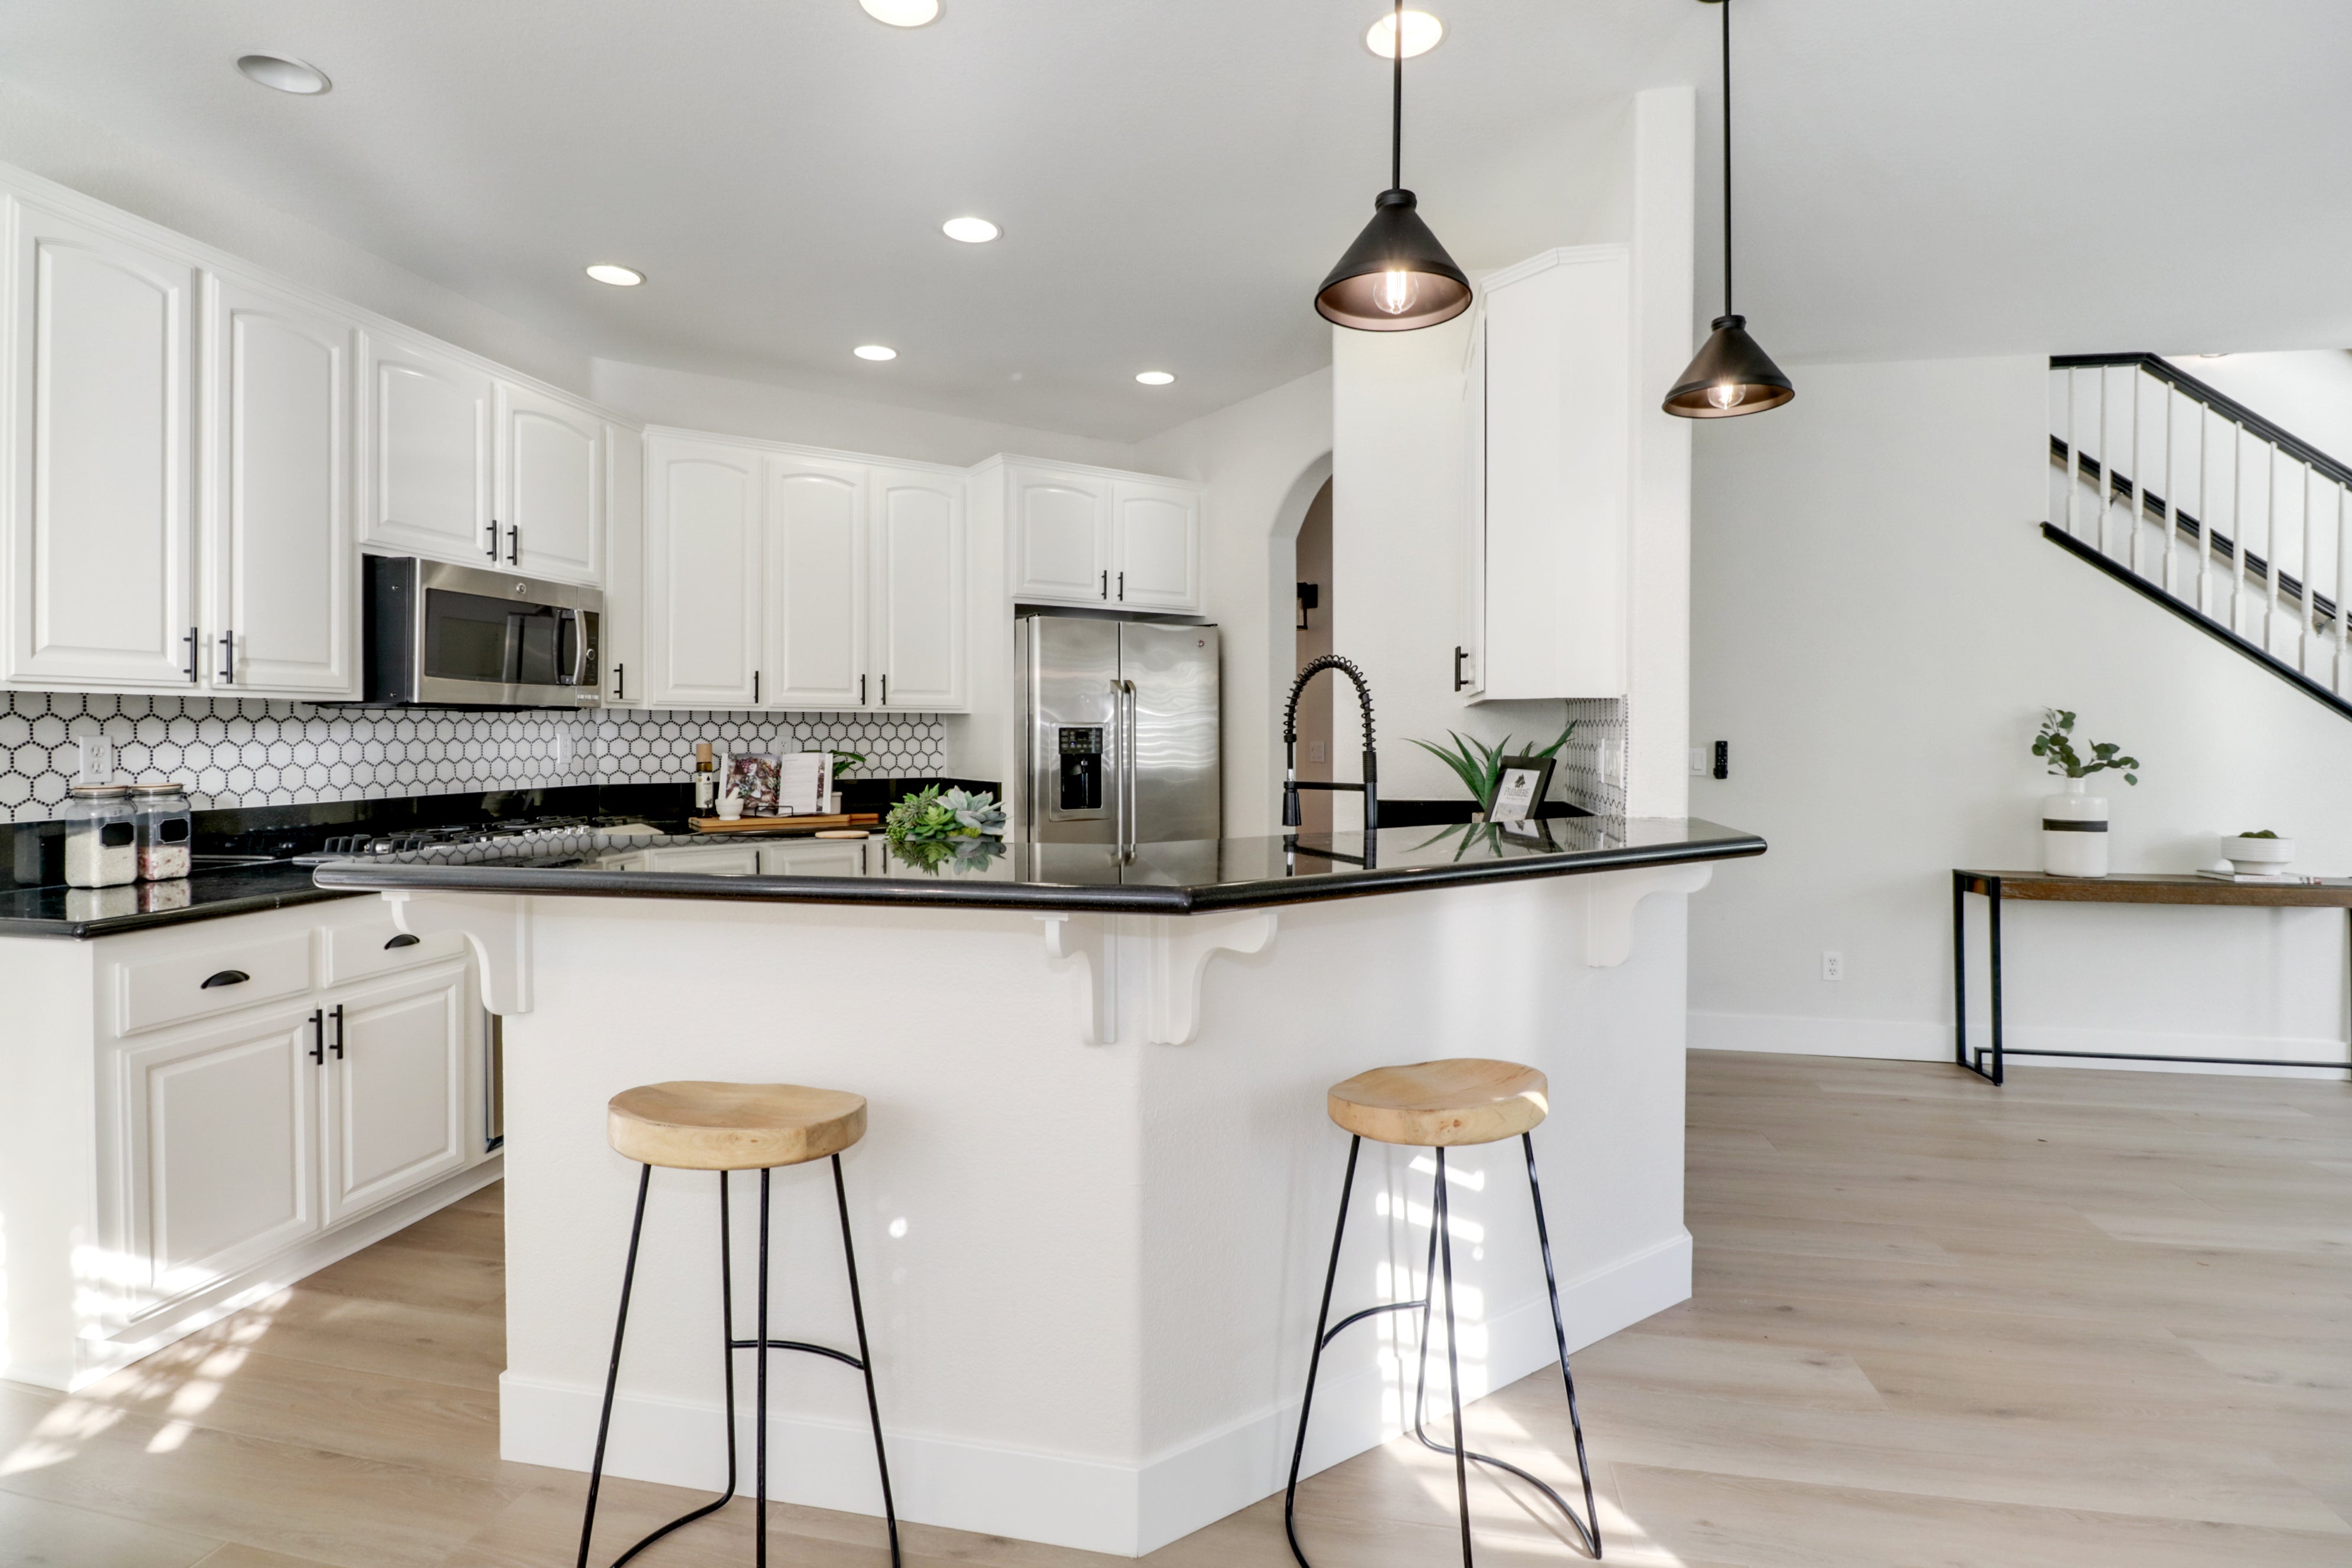 Premiere Home Staging Projects | Kitchen interior design idea - Barton Rd, Granite Bay